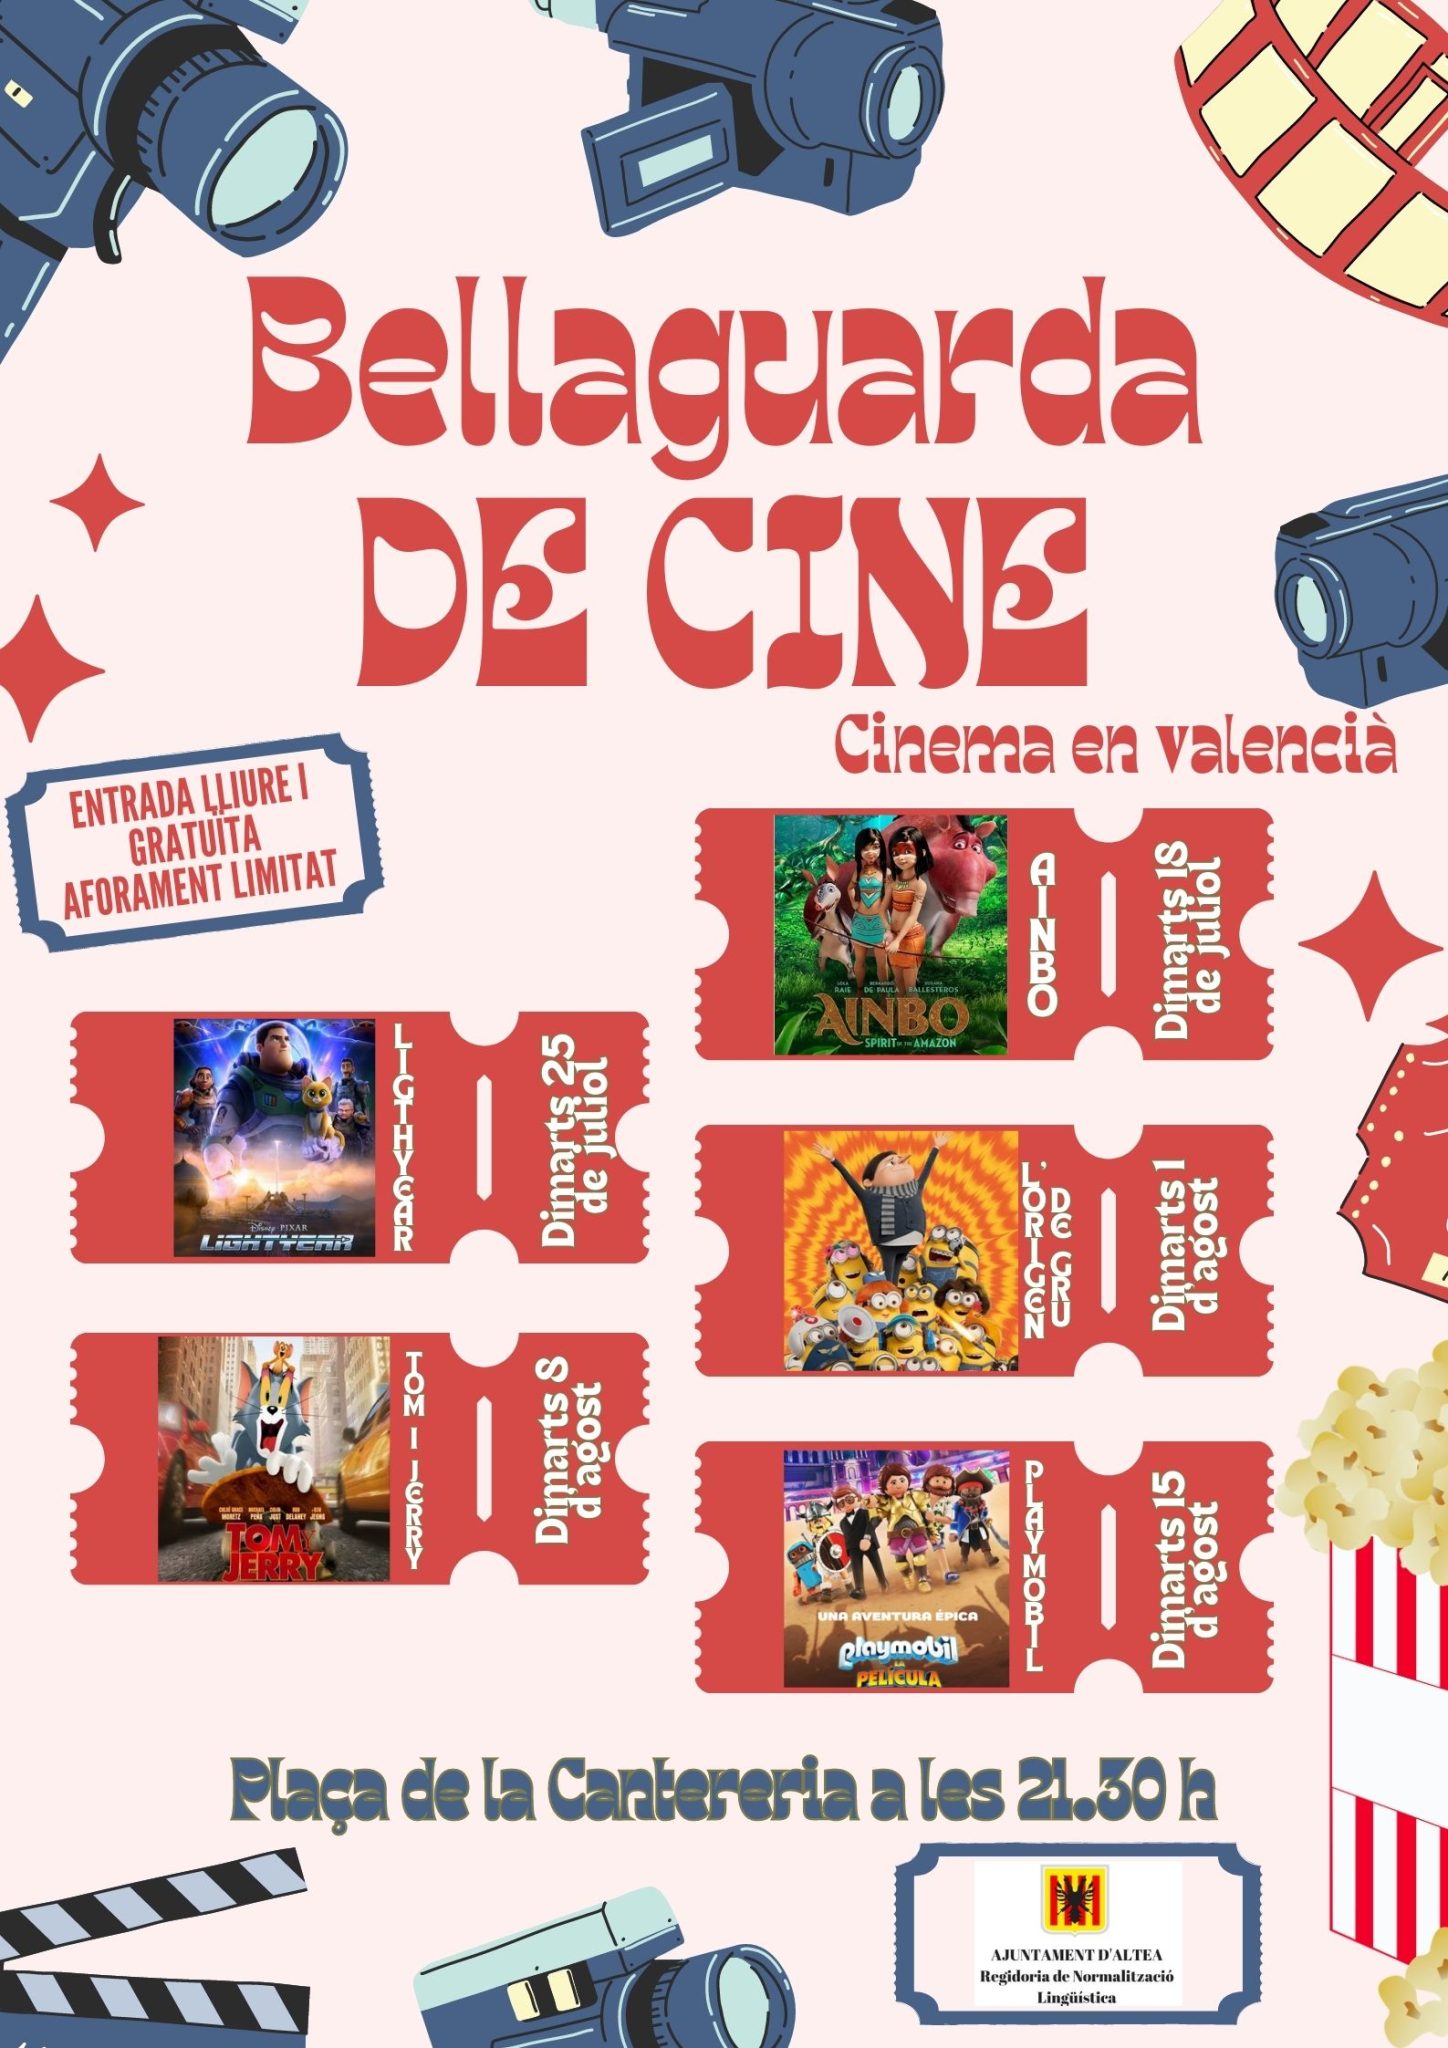 Bellaguarda de Cine projectarà, demà 25 de juliol, la pel·lícula “Lightyear” en valencià. Les sessions són cada dimarts a les 21.30 hores en la plaça de la Cantereria fins al dia 15 d’agost. L’entrada és lliure i gratuïta.